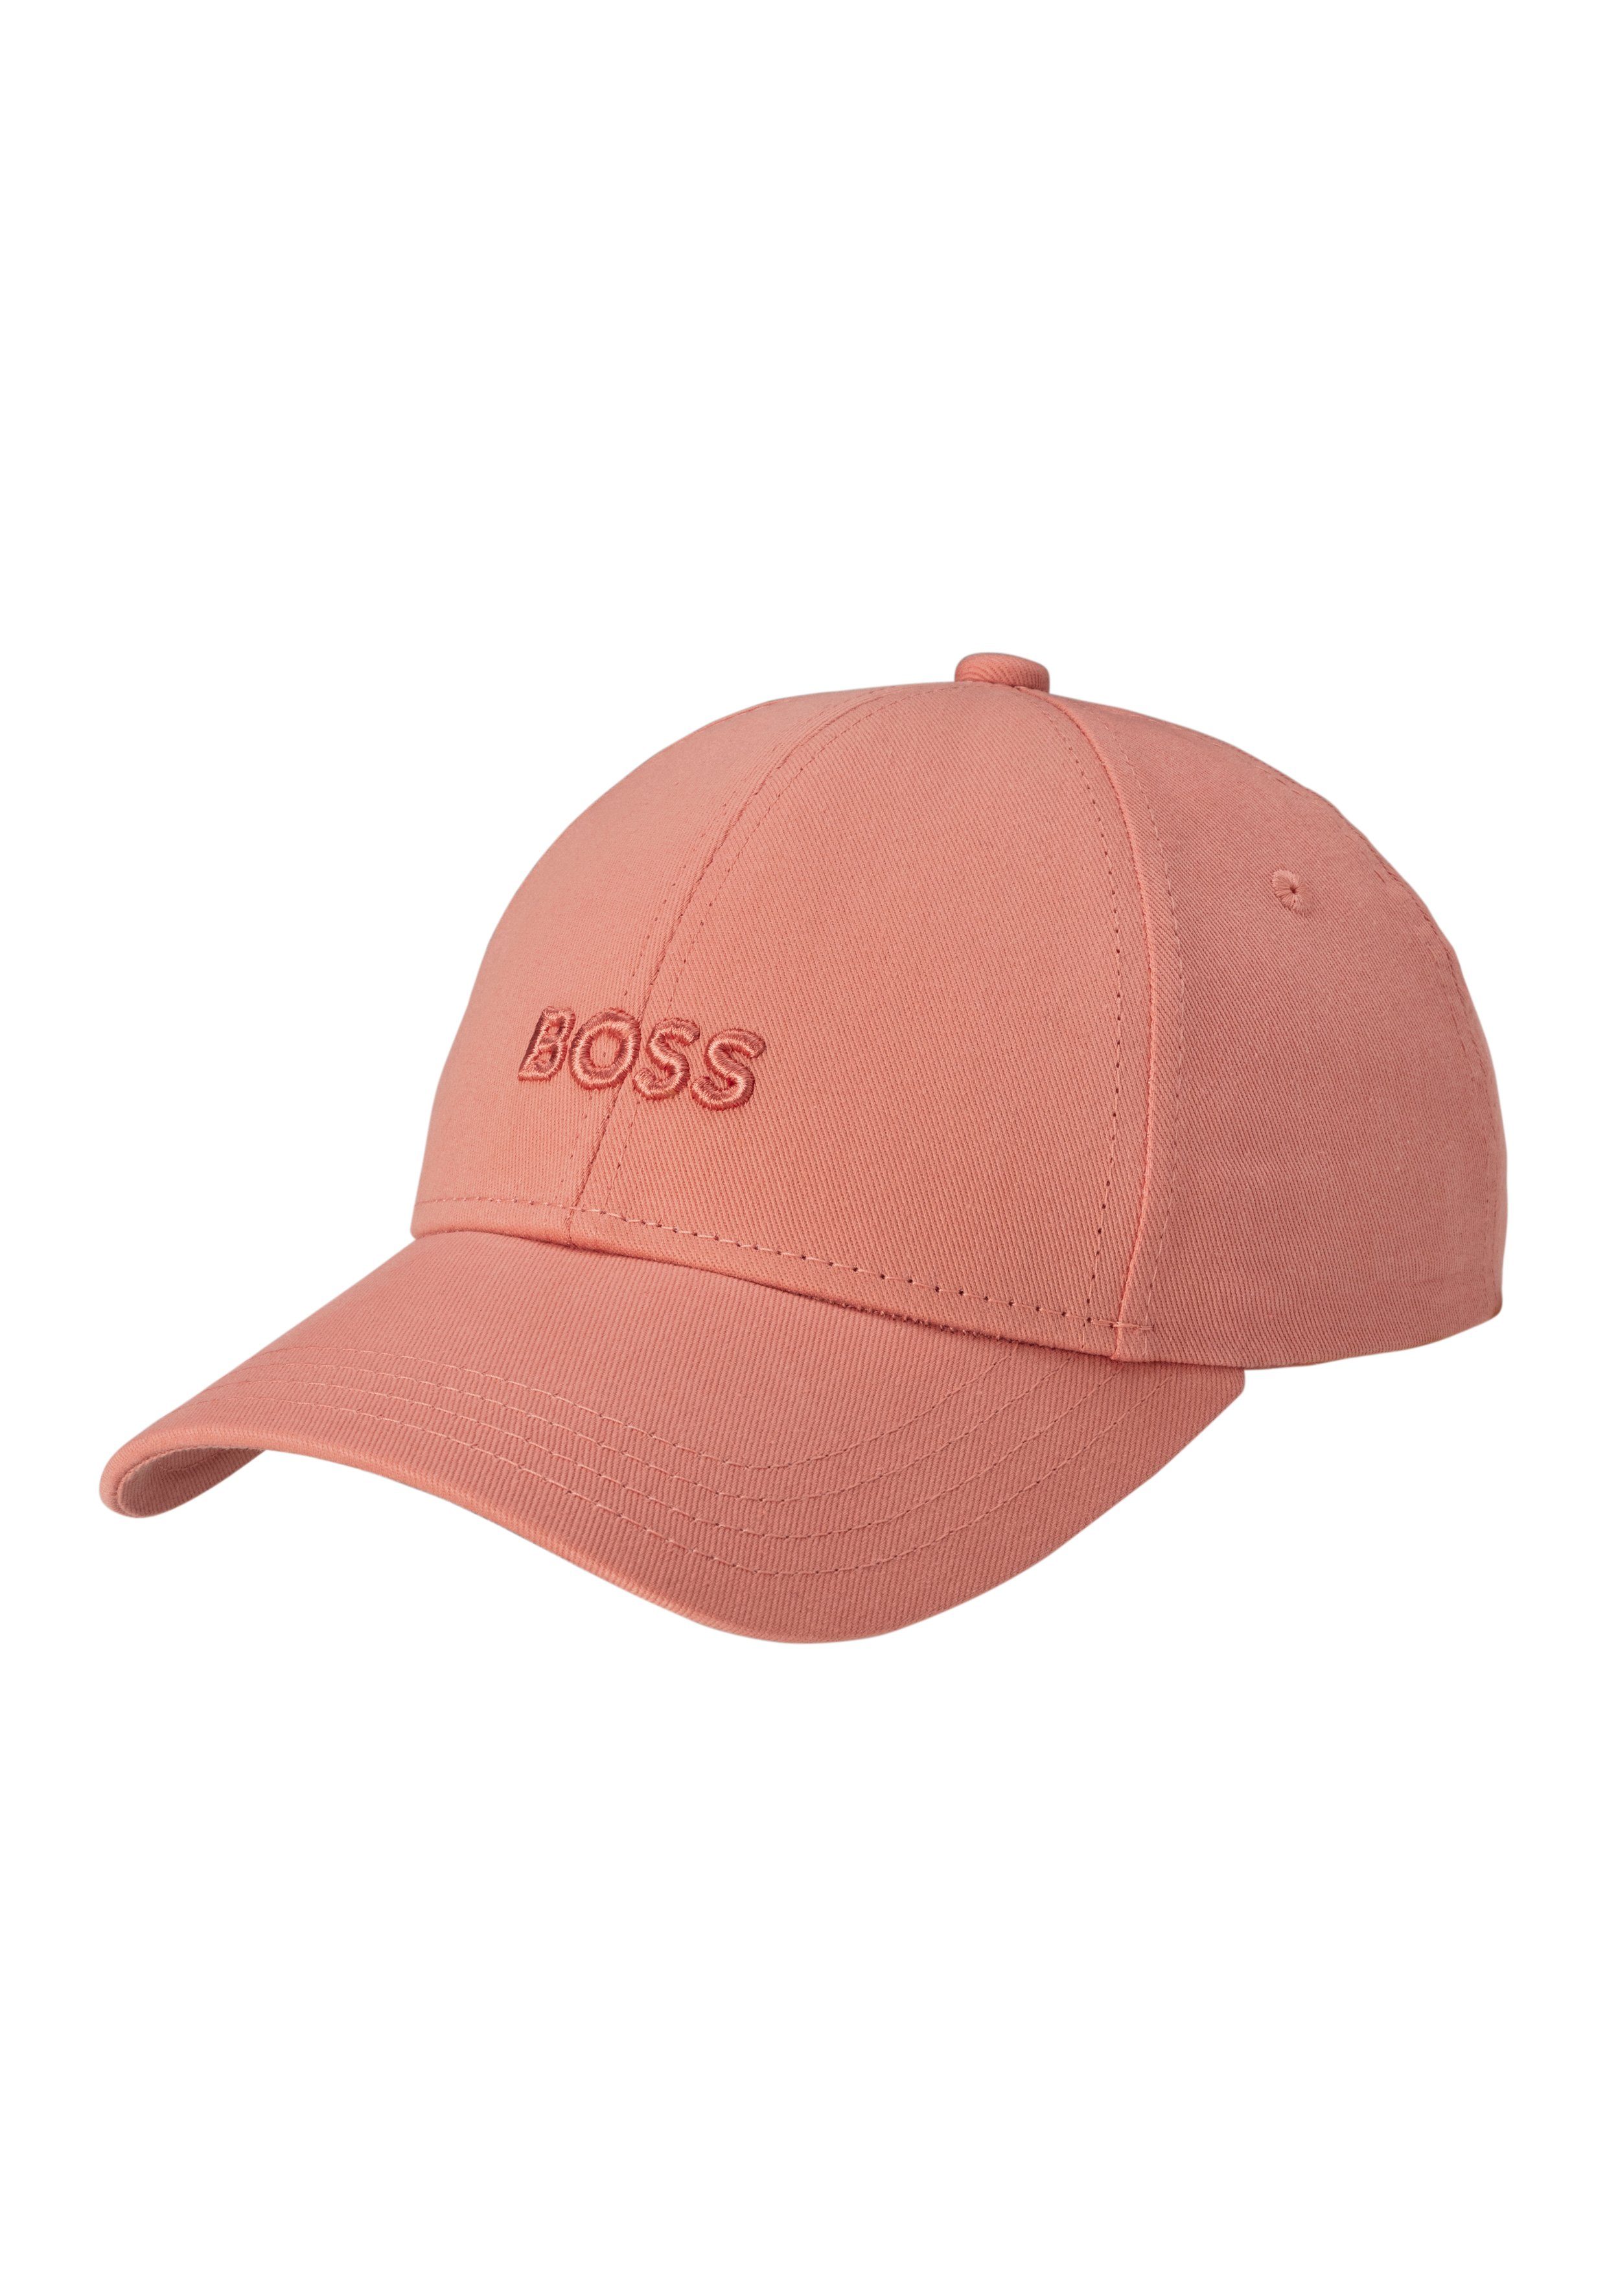 BOSS BOSS Schriftzug mit Baseball Cap Ari aufgesticktem Light/Pastel_Orange835